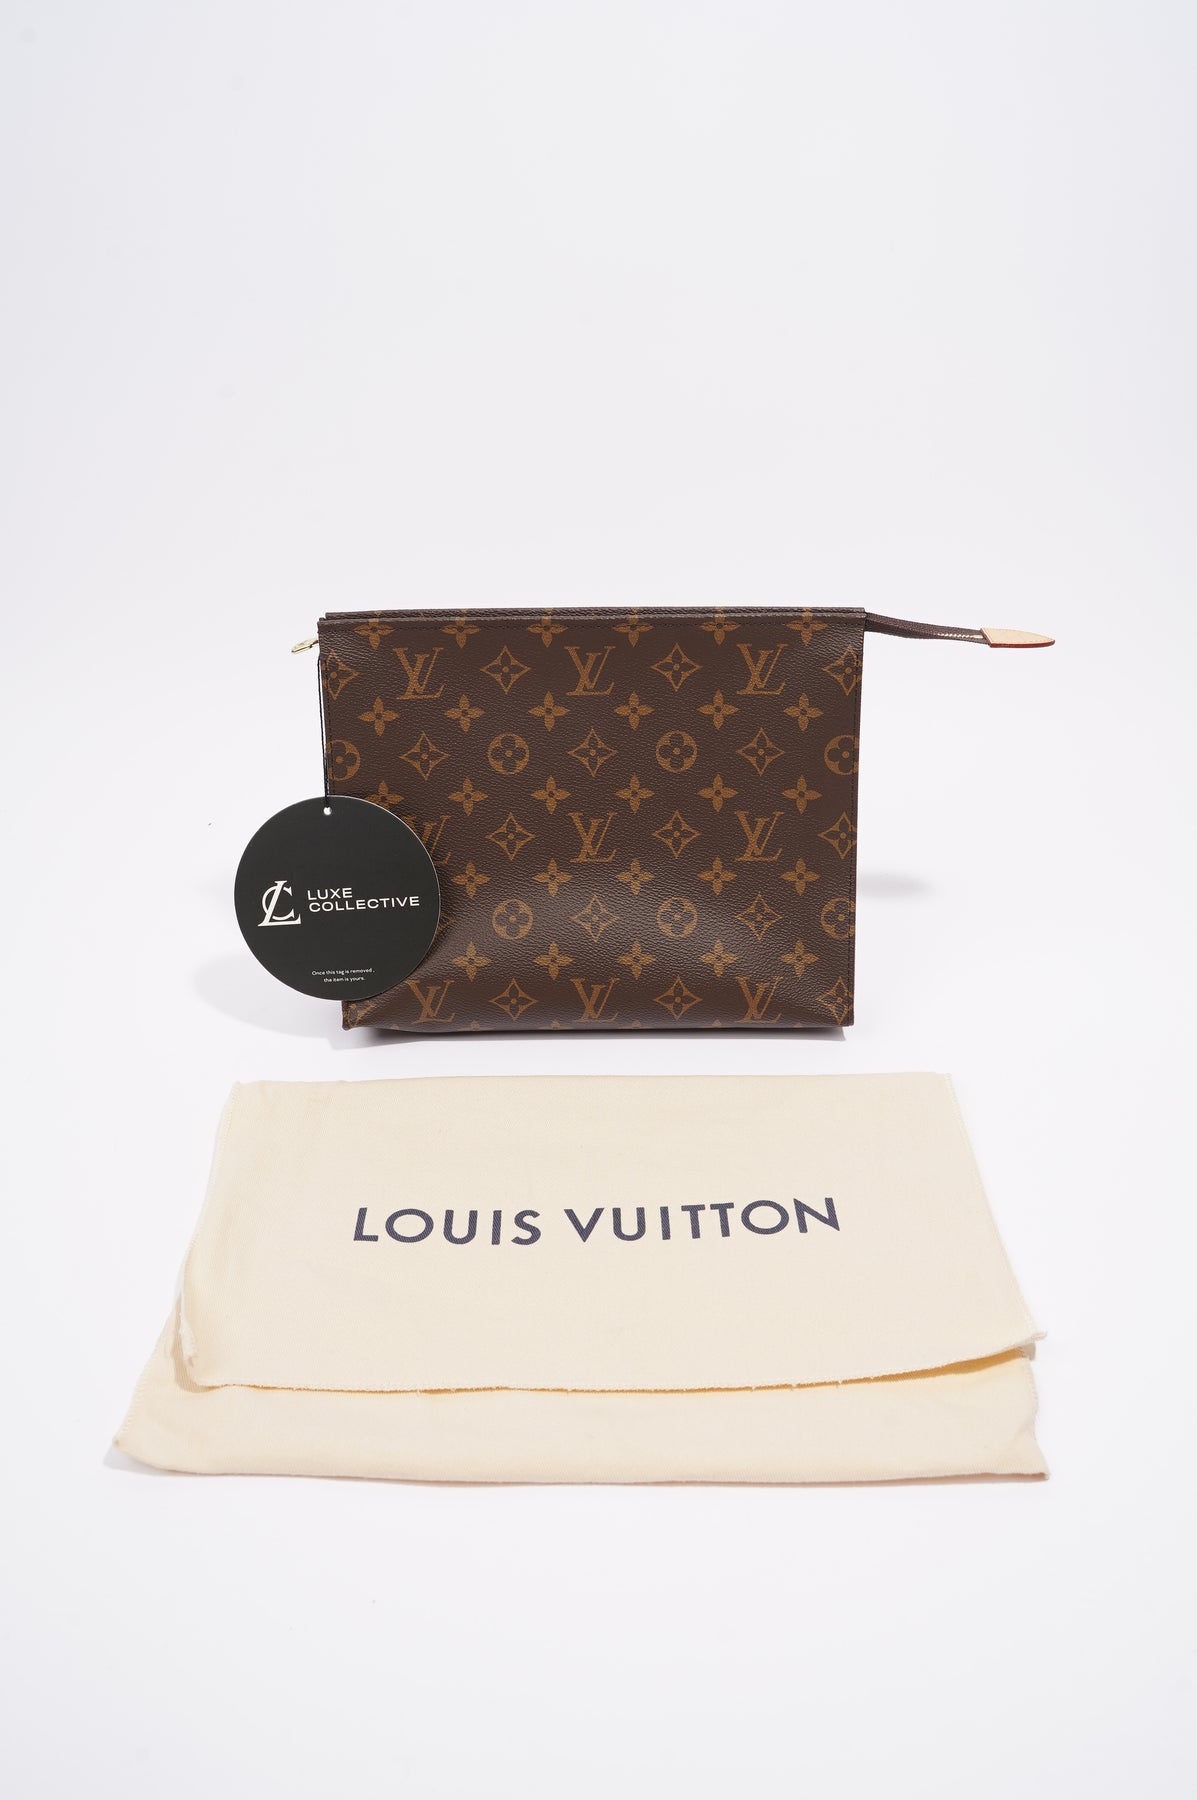 Louis Vuitton – The Monogram Canvas